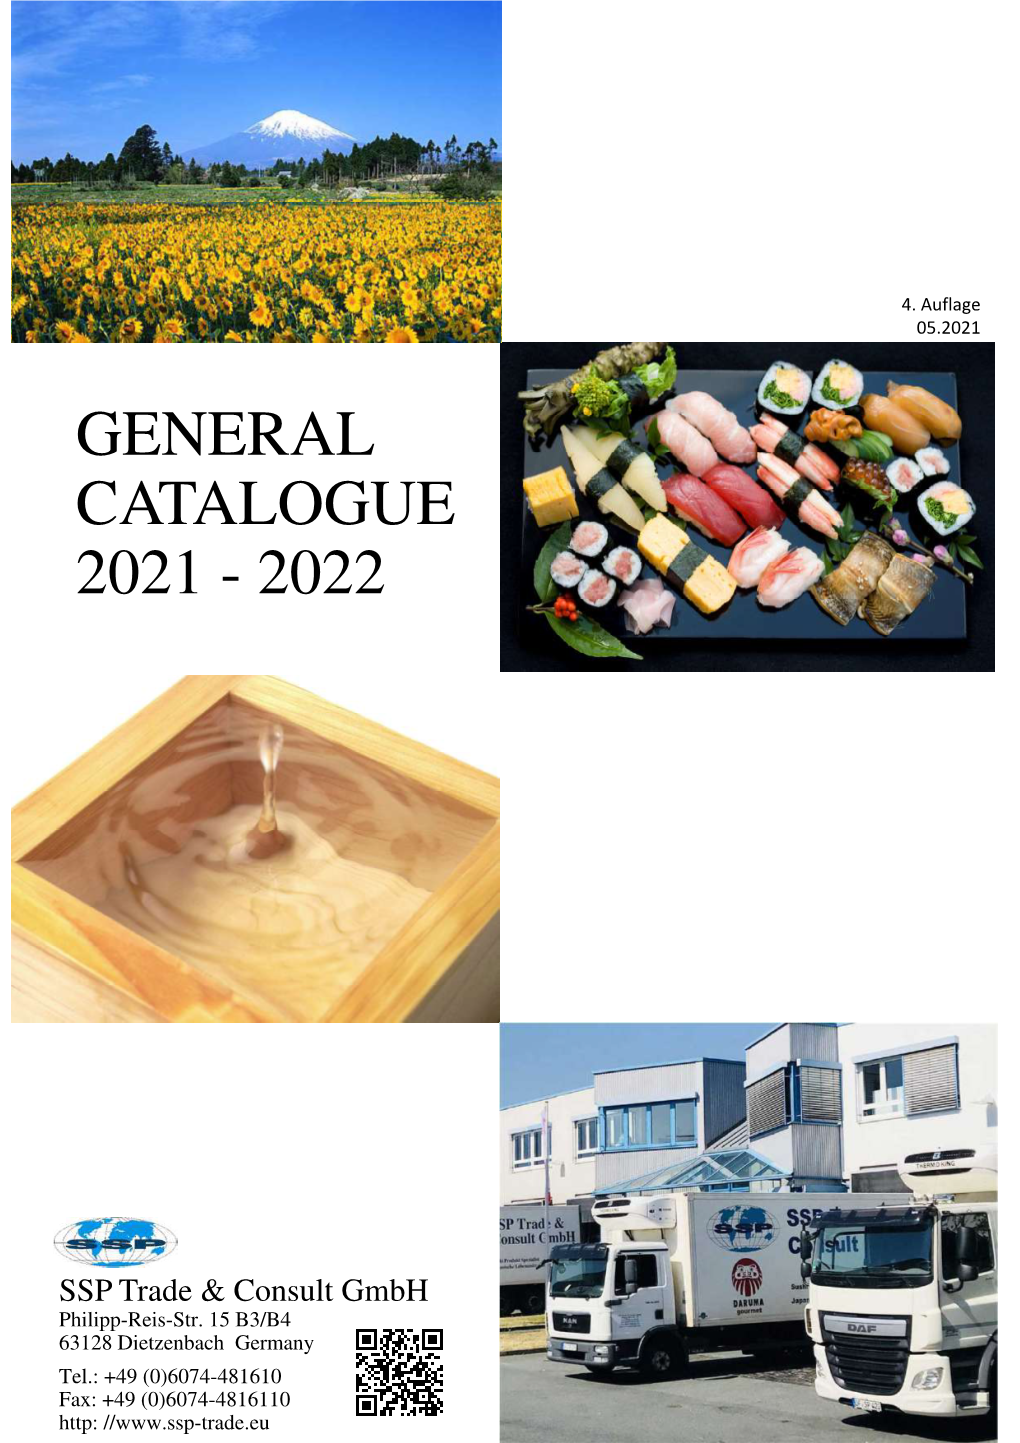 General Catalogue 2021 - 2022